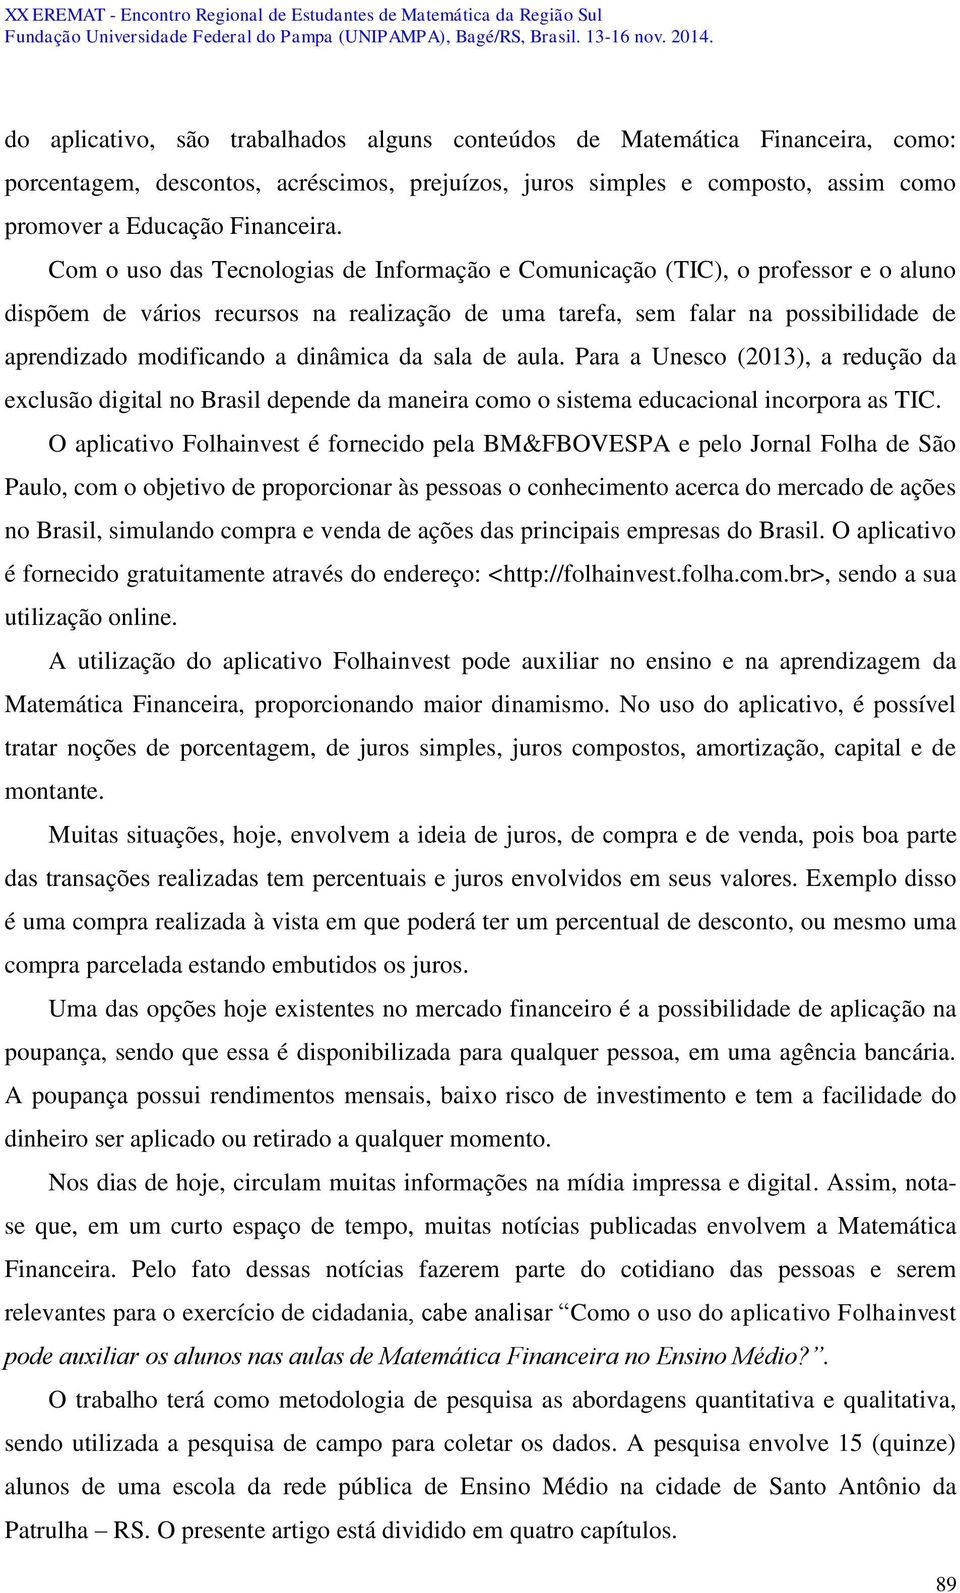 dinâmica da sala de aula. Para a Unesco (2013), a redução da exclusão digital no Brasil depende da maneira como o sistema educacional incorpora as TIC.